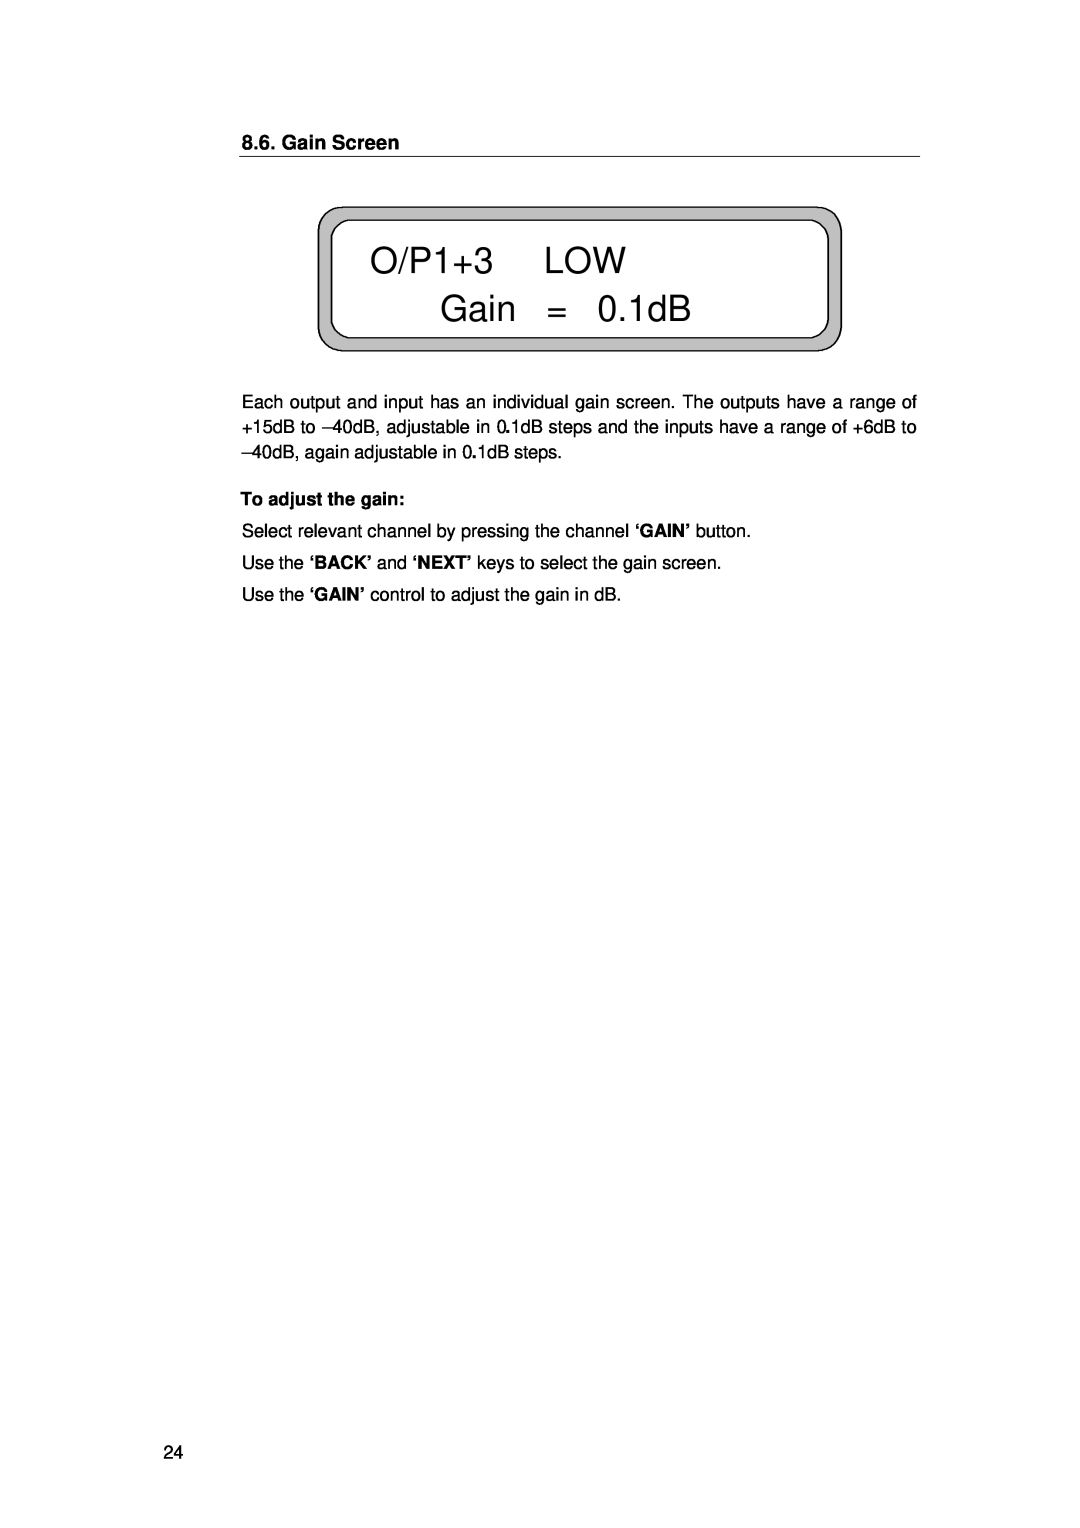 TOA Electronics TDX2 user manual O/P1+3 LOW Gain = 0.1dB, Gain Screen 